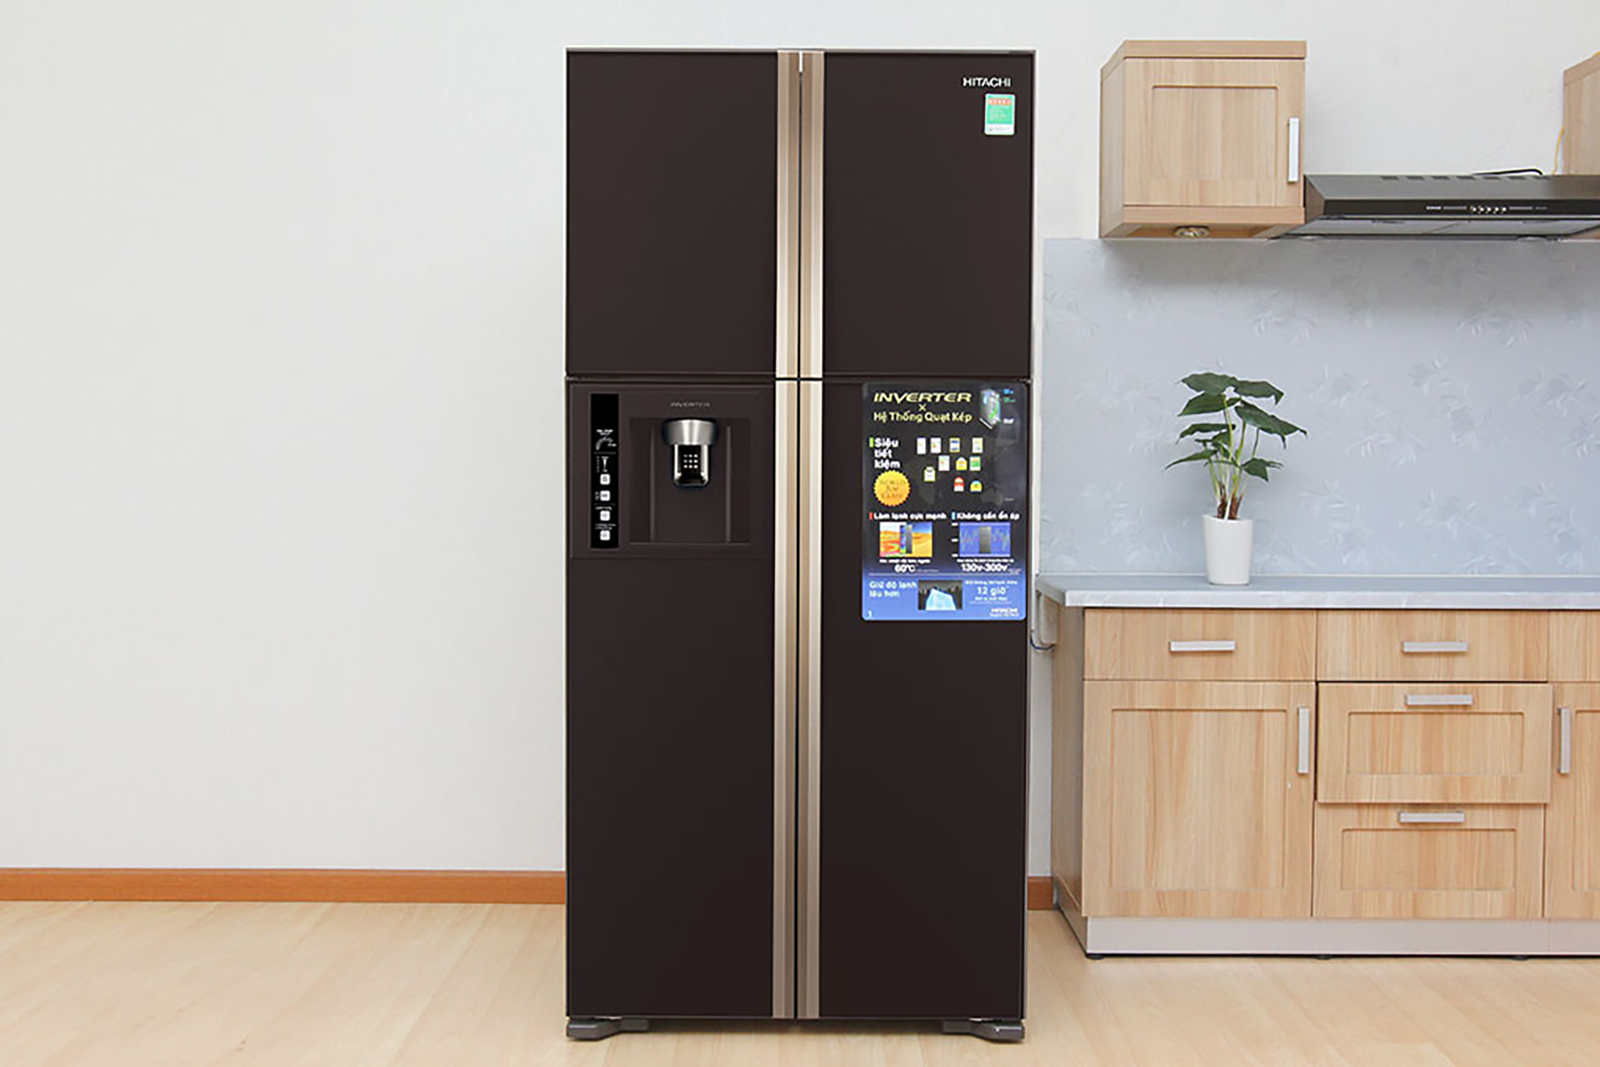 Tủ lạnh Hitachi có tốt không? Có nên mua không? [Chuyên gia tư vấn]